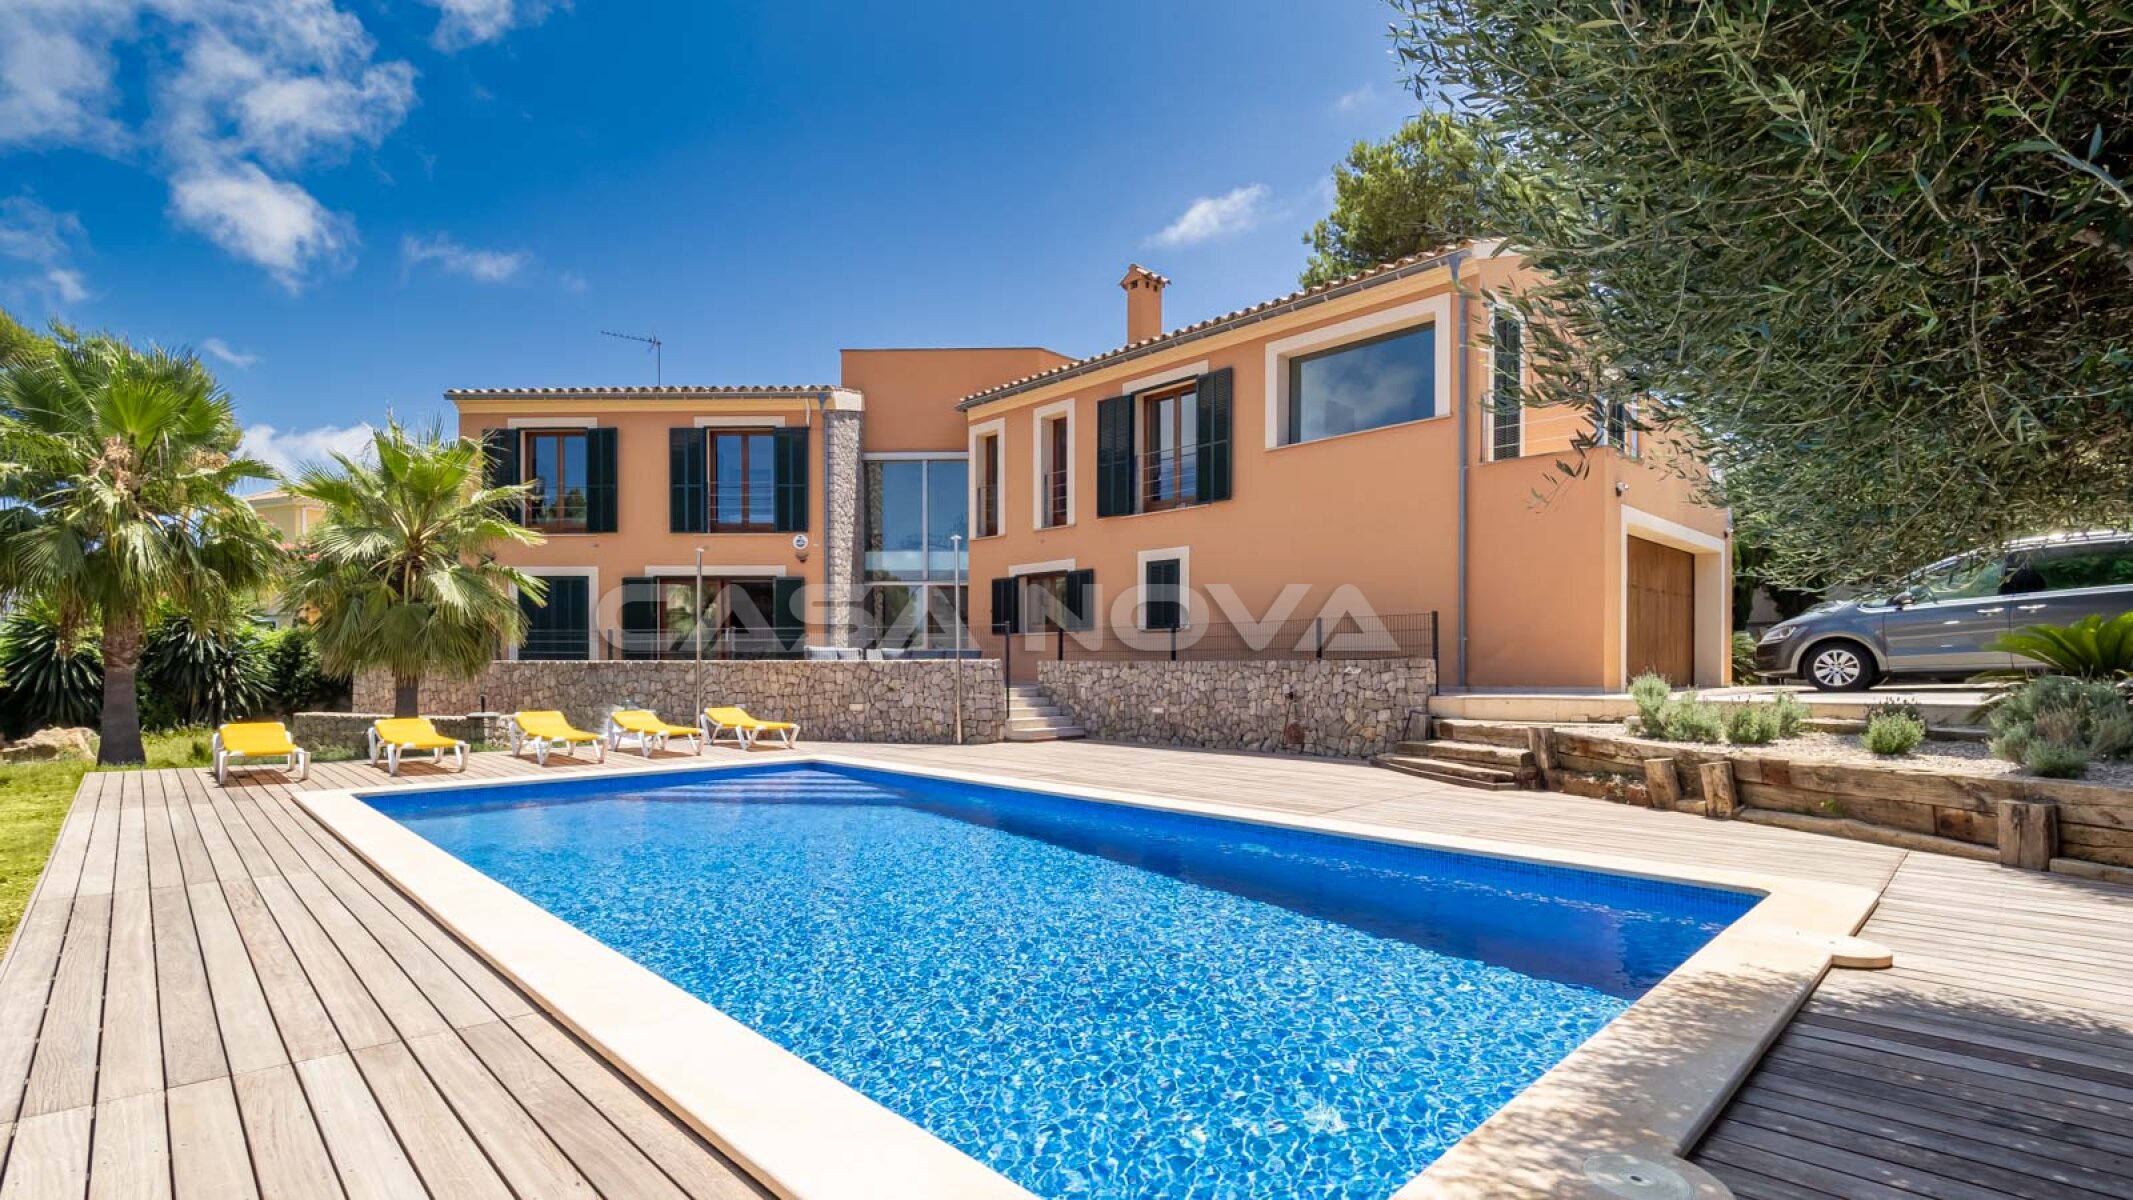 Elegante villa en Mallorca con piscina en un lugar tranquilo